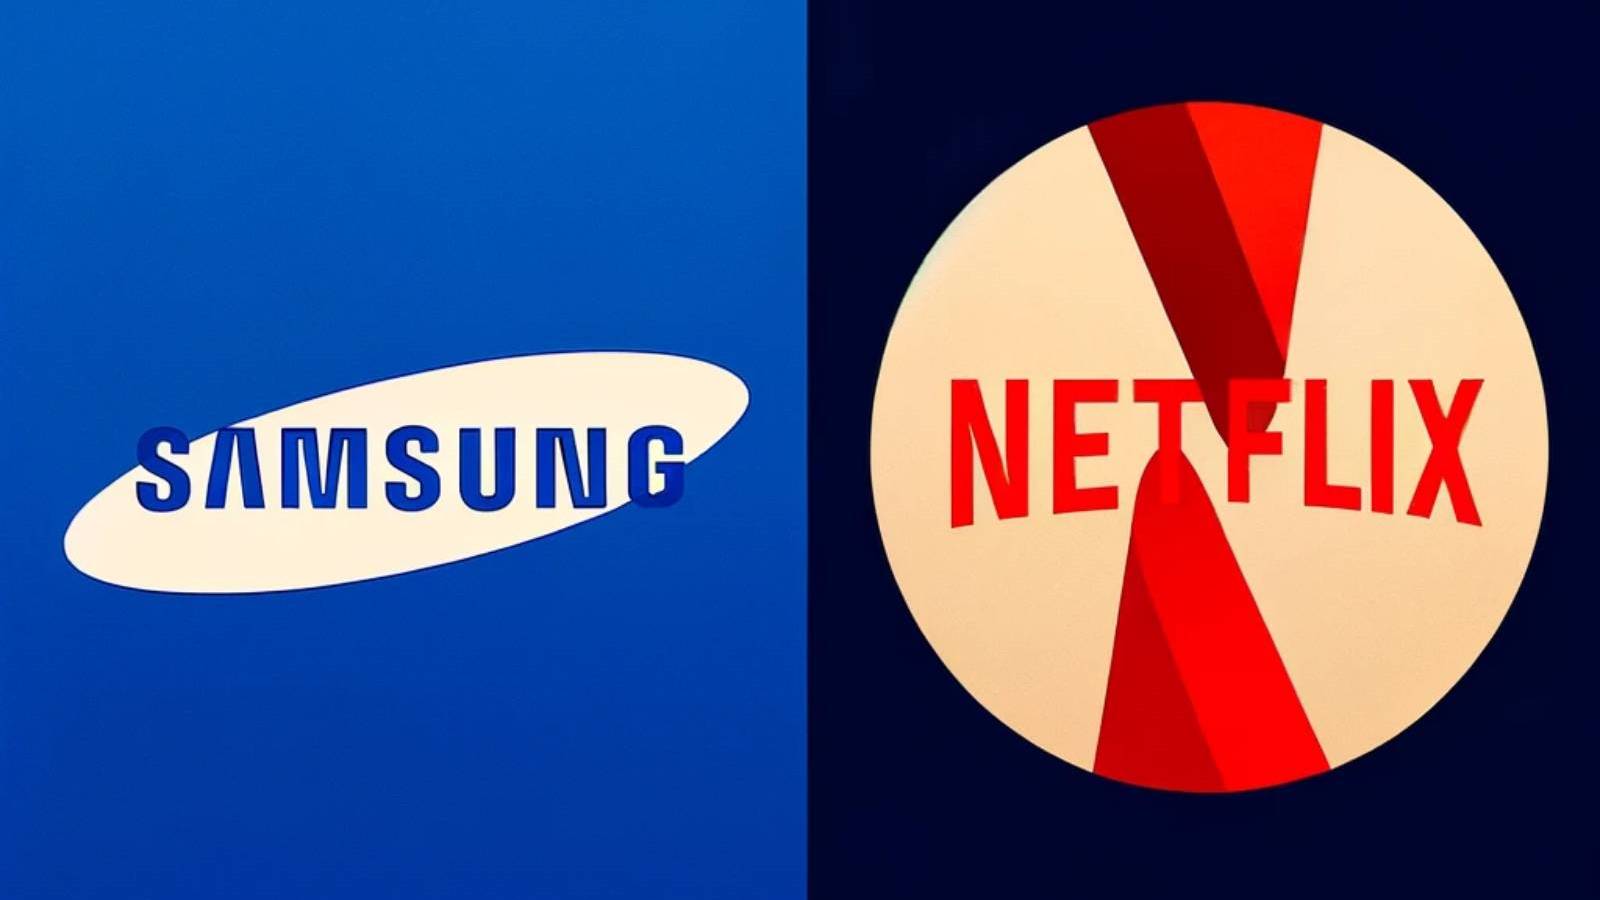 Annuncio importante Samsung con Netflix, quale decisione hanno preso le aziende